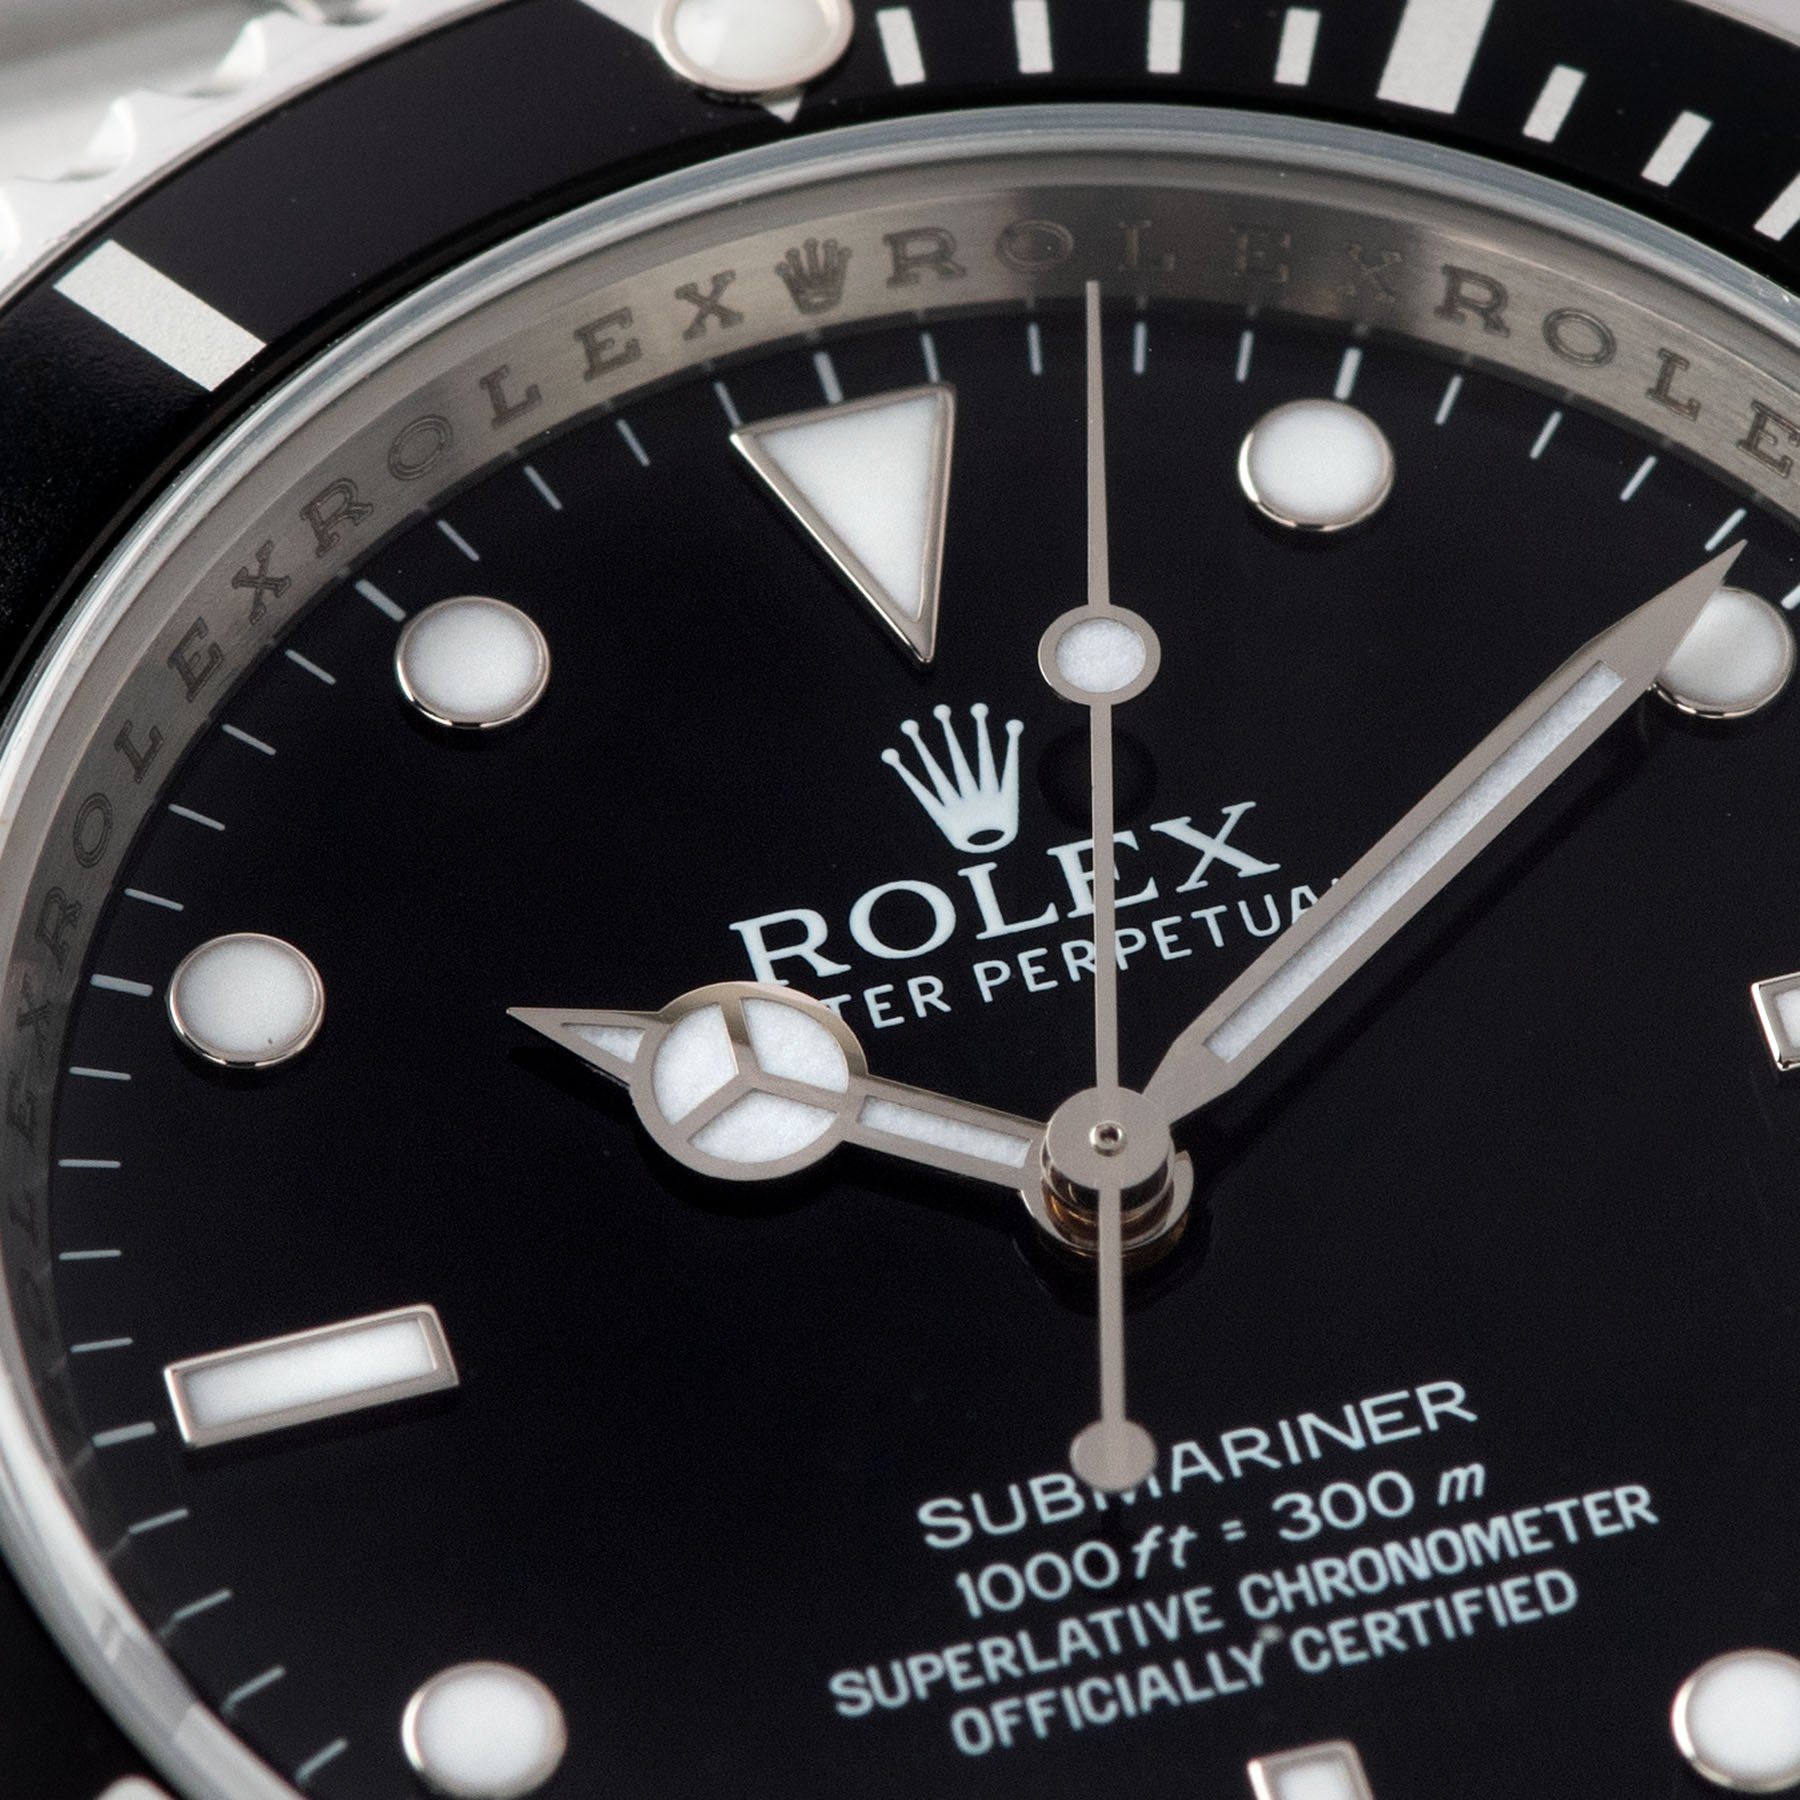 Rolex Submariner Four-Line Dial 14060M Full Set dial